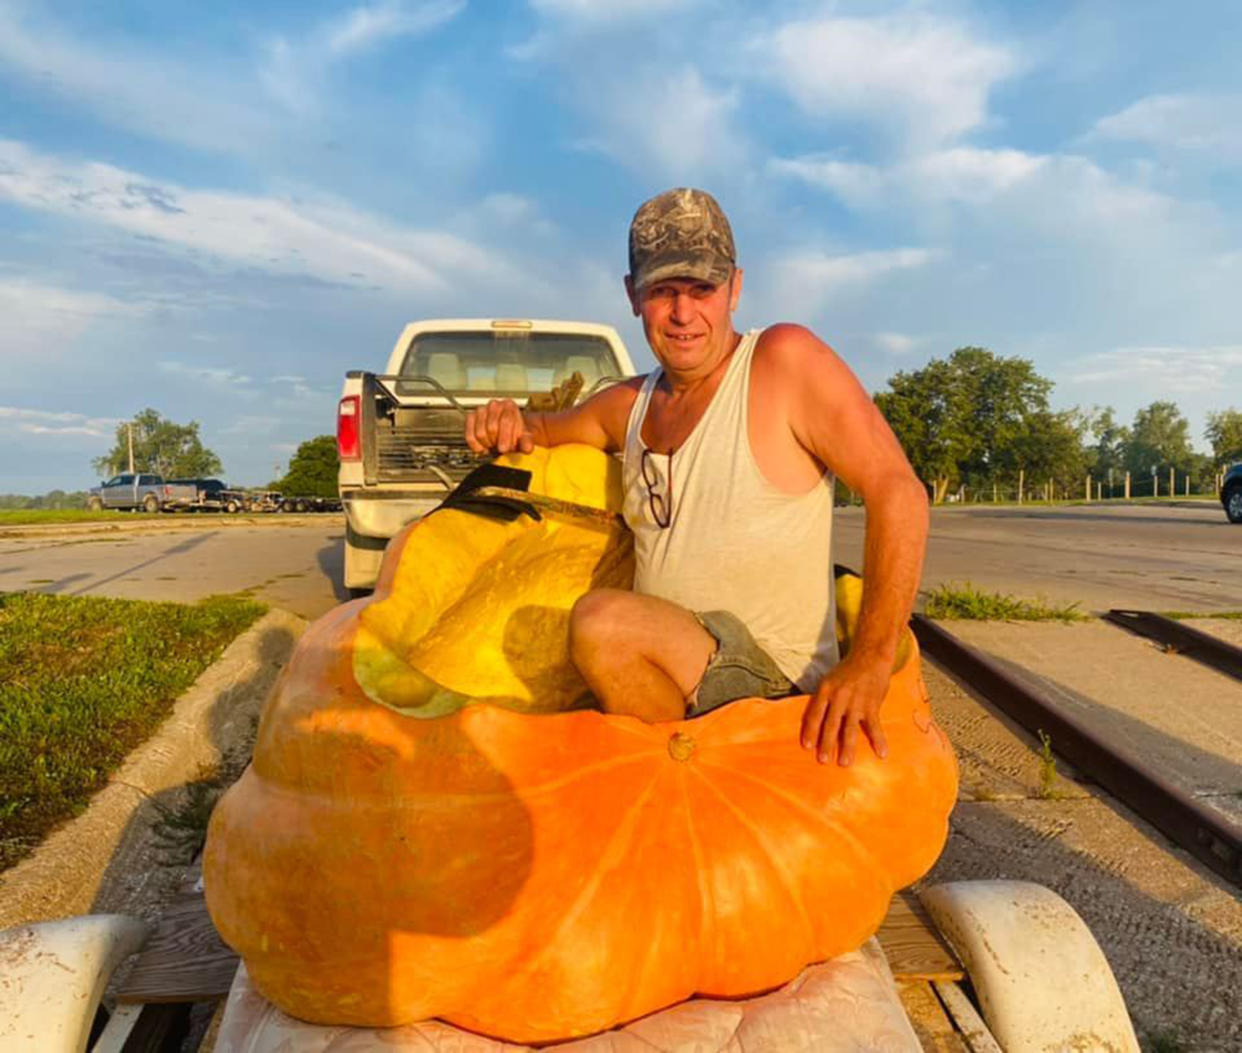 Duane Hansen in his giant pumpkin, SS Berta, complete with a beer cupholder. (Courtesy City of Bellevue, Nebraska via Facebook / Duane Hansen)